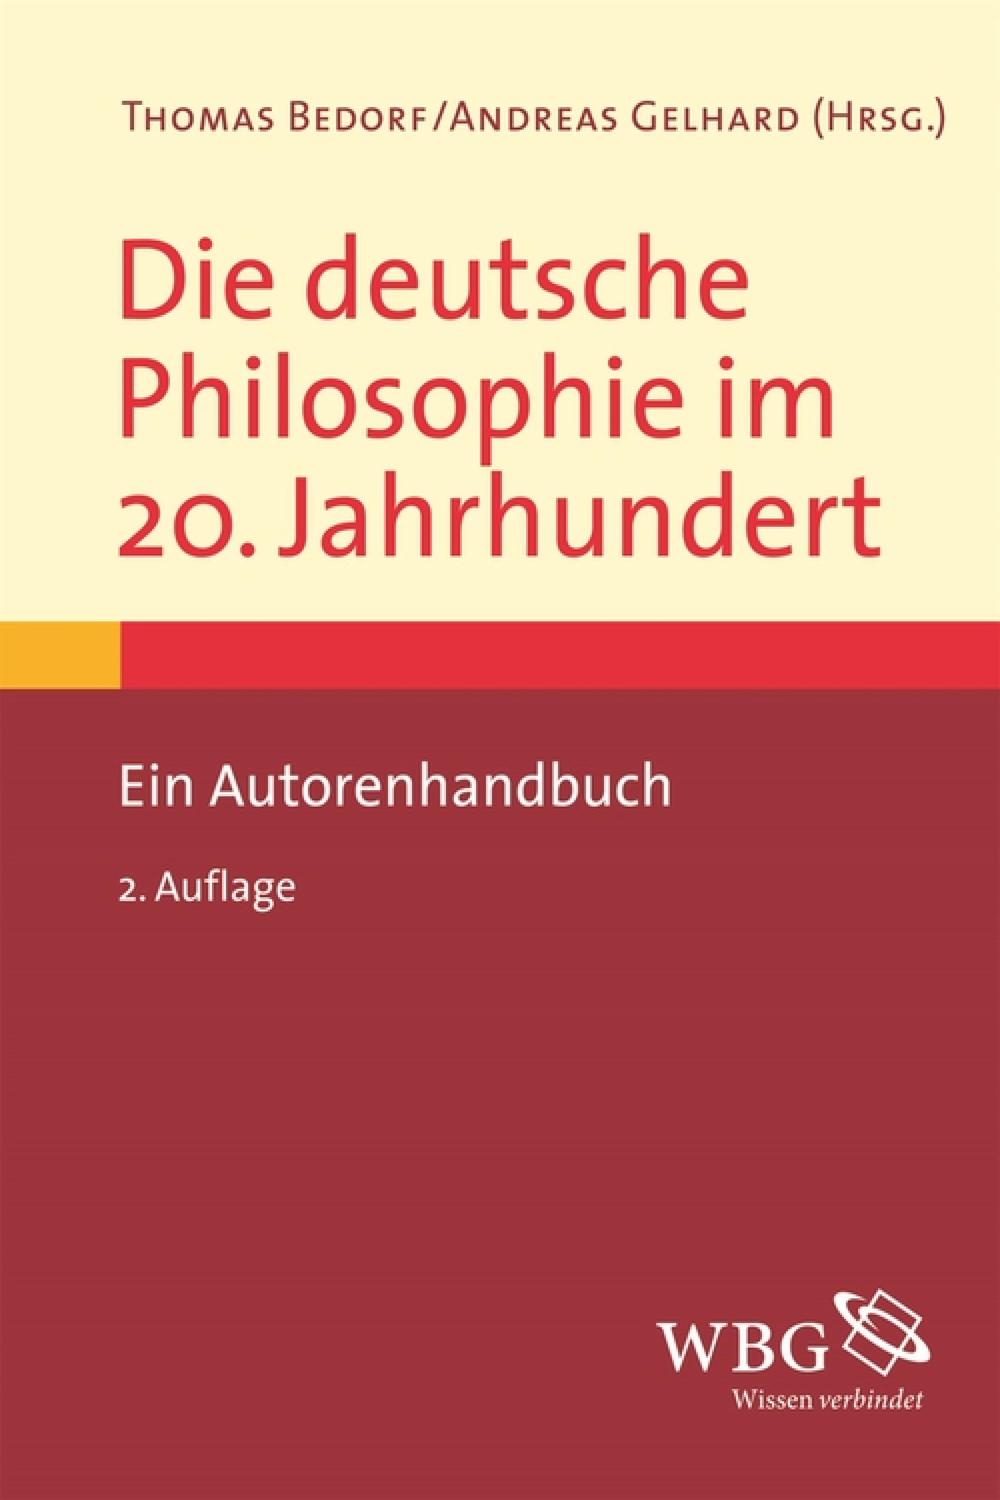 Die deutsche Philosophie im 20. Jahrhundert - Andreas Gelhard, Thomas Bedorf